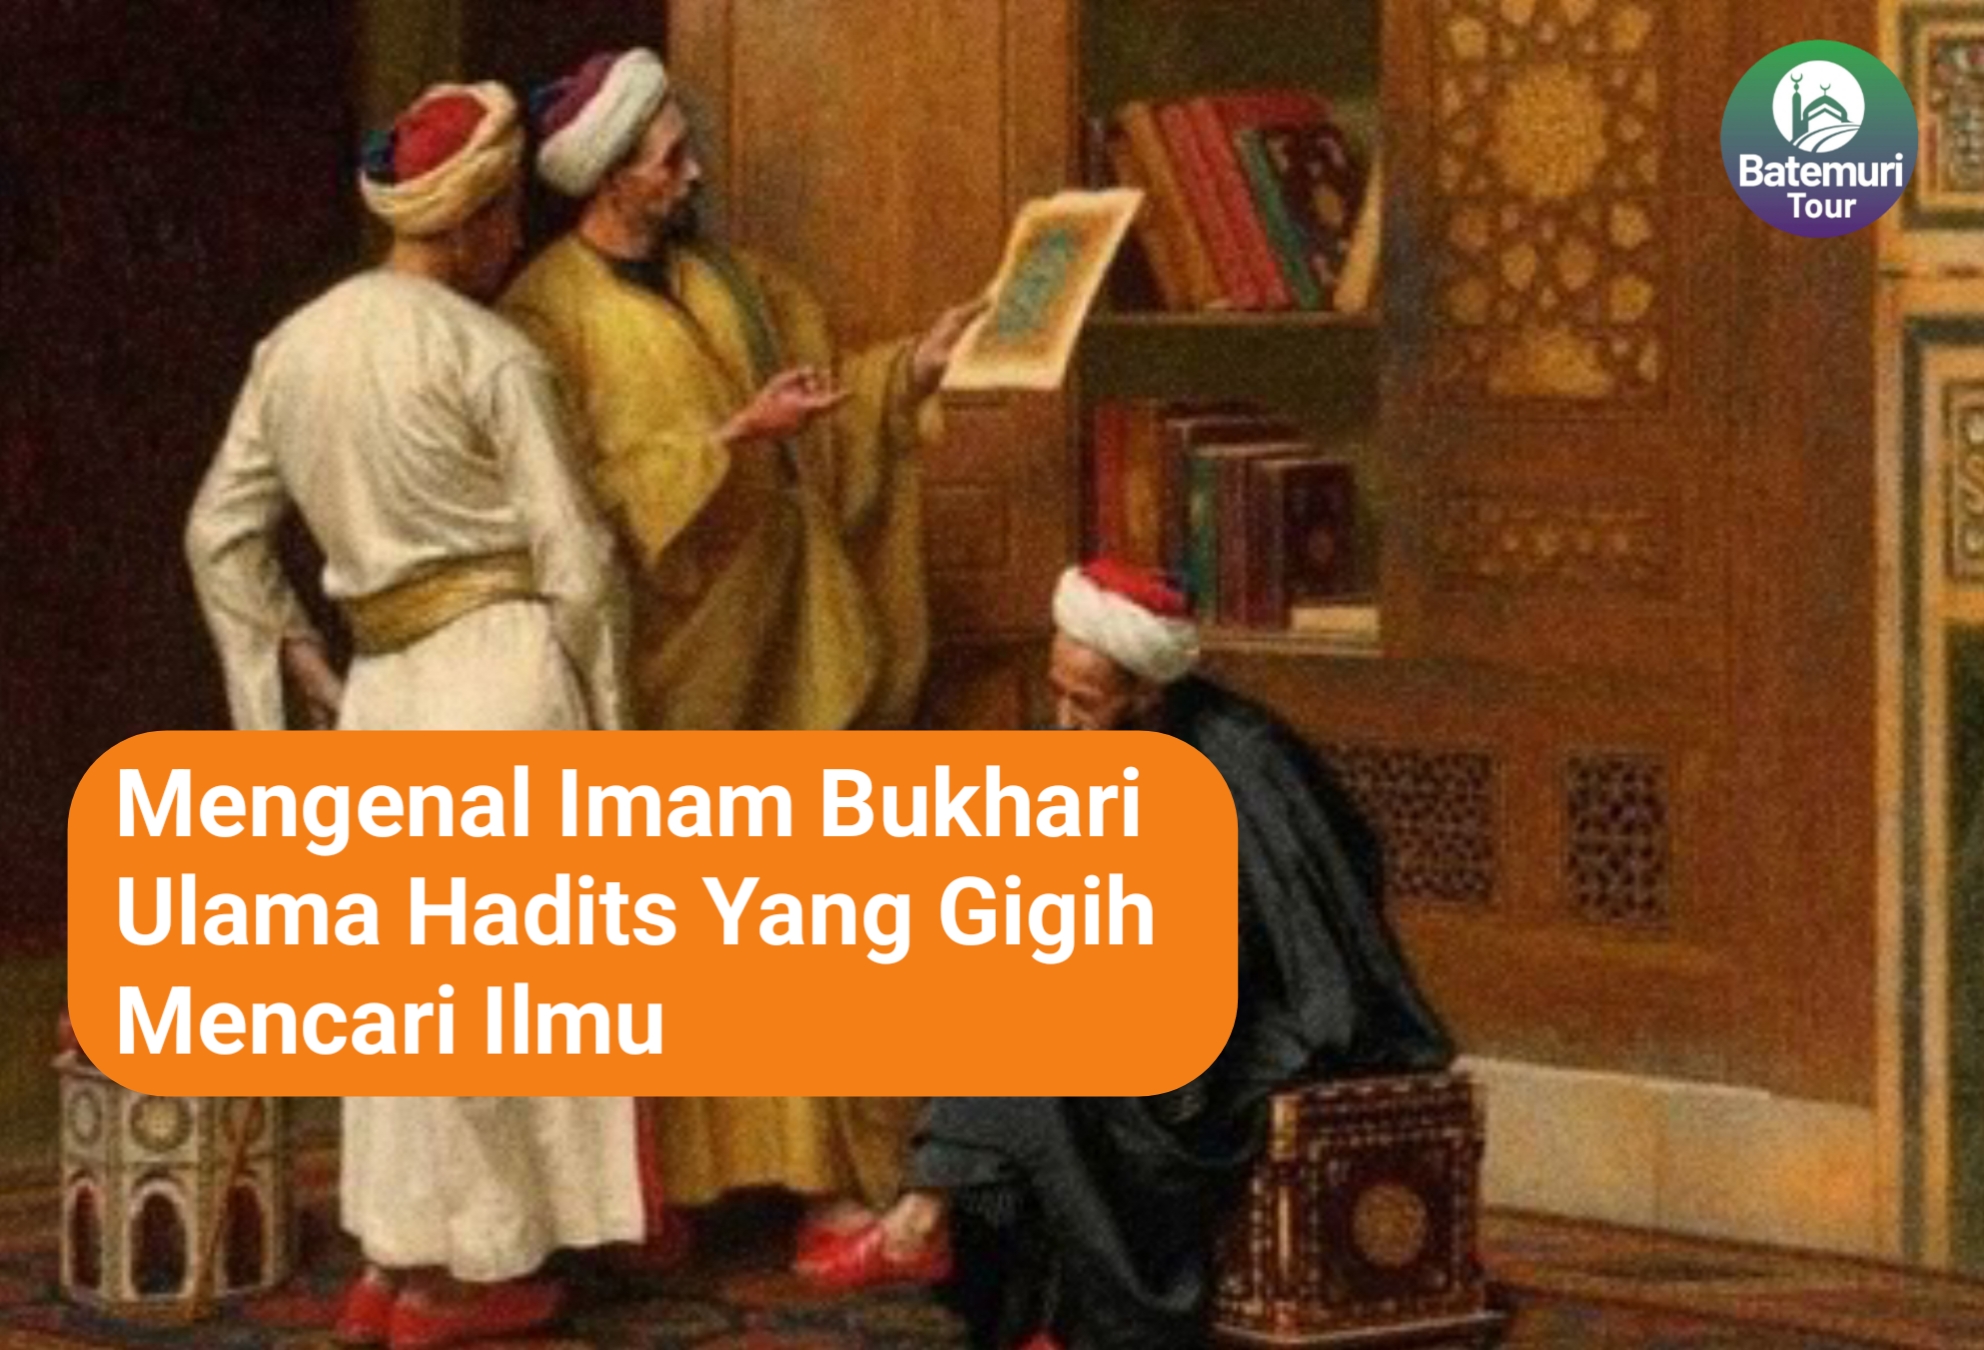 Mengenal Imam Bukhari Ulama Hadis yang Gigih Mencari Ilmu 